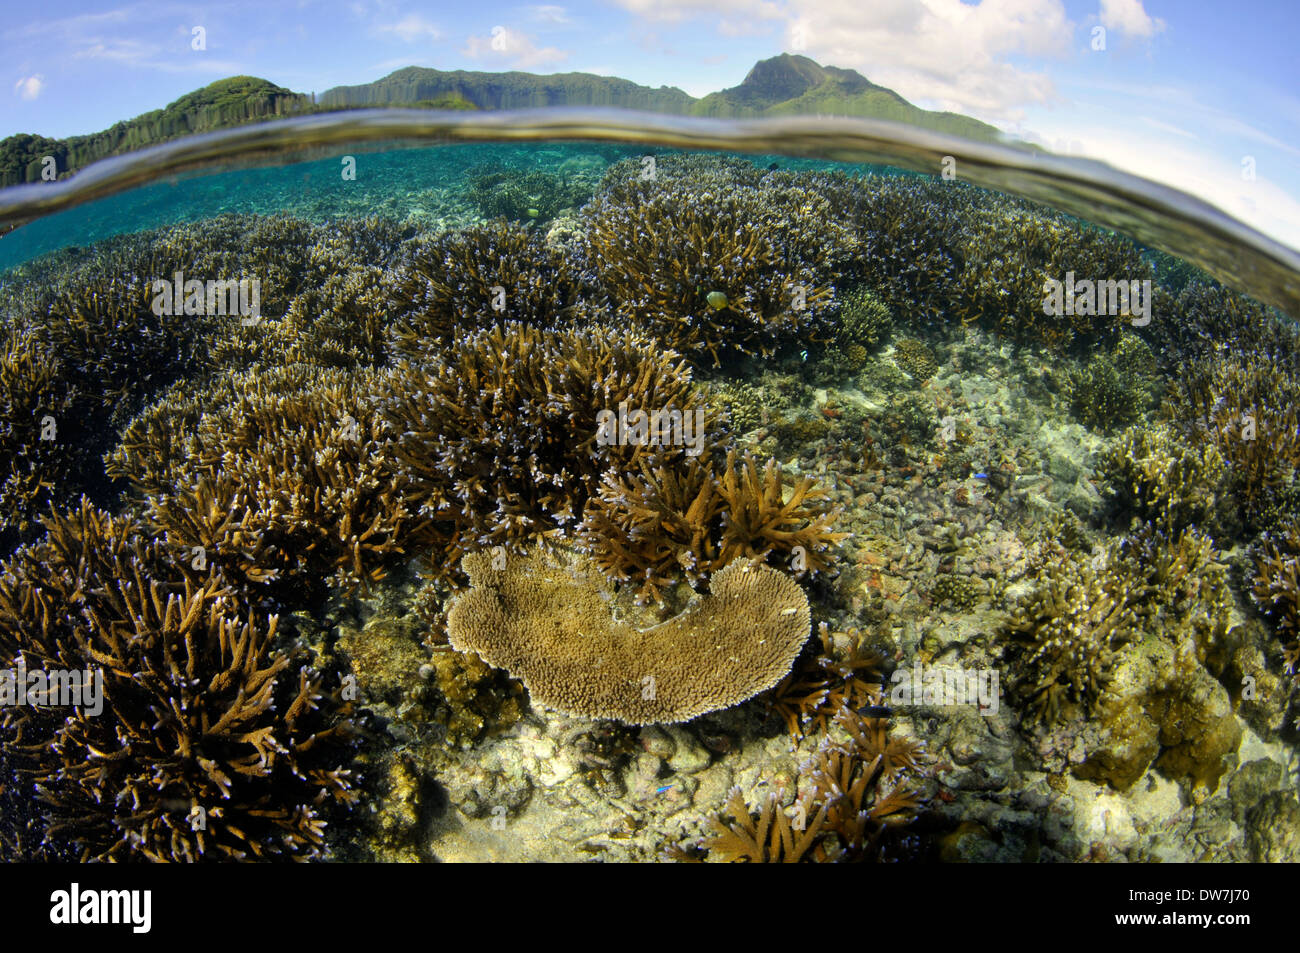 Les récifs coralliens peu profonds avec plusieurs espèces d'Acropora, Fagaalu Bay, Pago Pago, Tutuila, American Samoa Banque D'Images